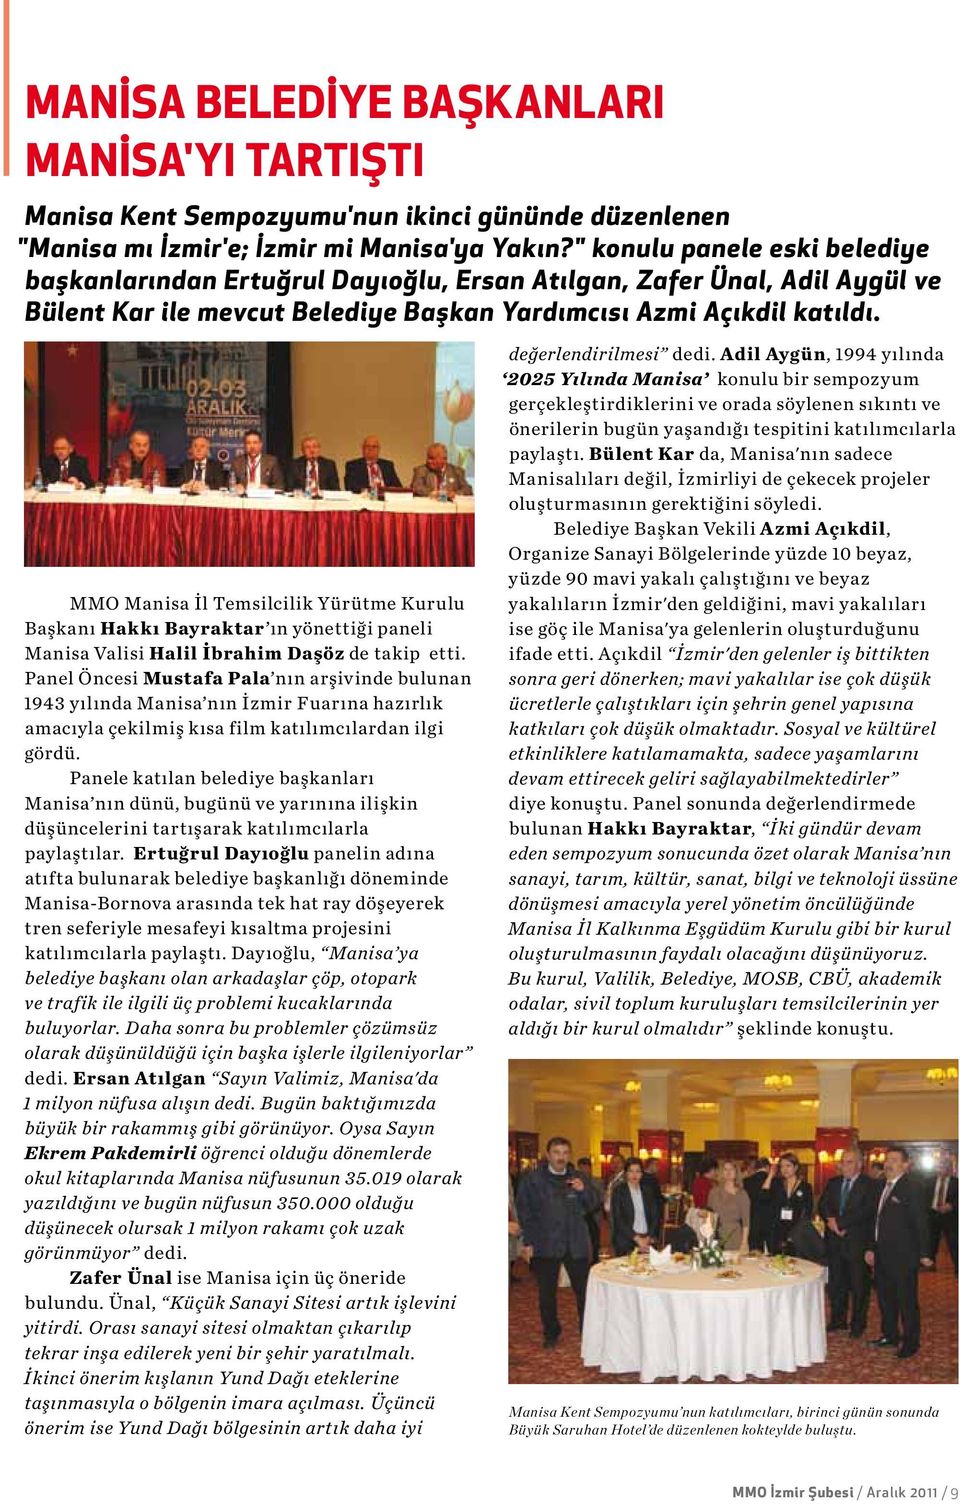 MMO Manisa İl Temsilcilik Yürütme Kurulu Başkanı Hakkı Bayraktar ın yönettiği paneli Manisa Valisi Halil İbrahim Daşöz de takip etti.